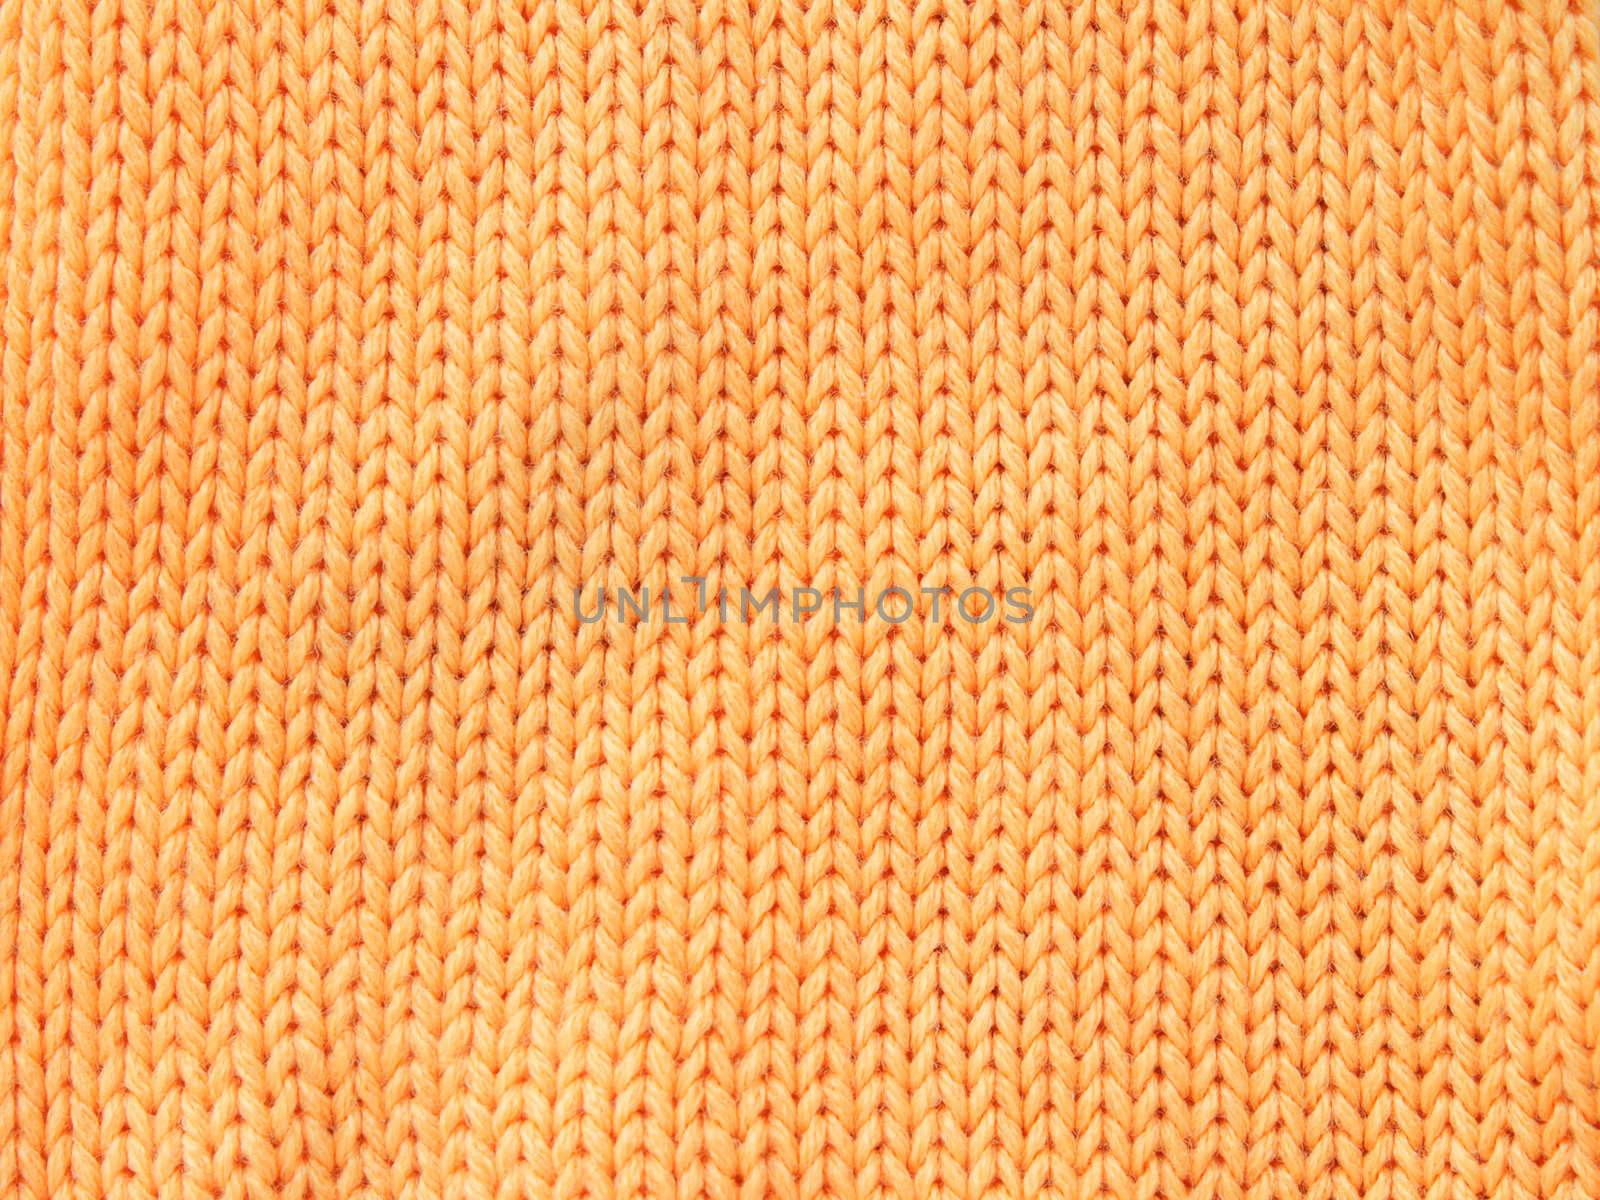 Orange woolen cloth by pulen